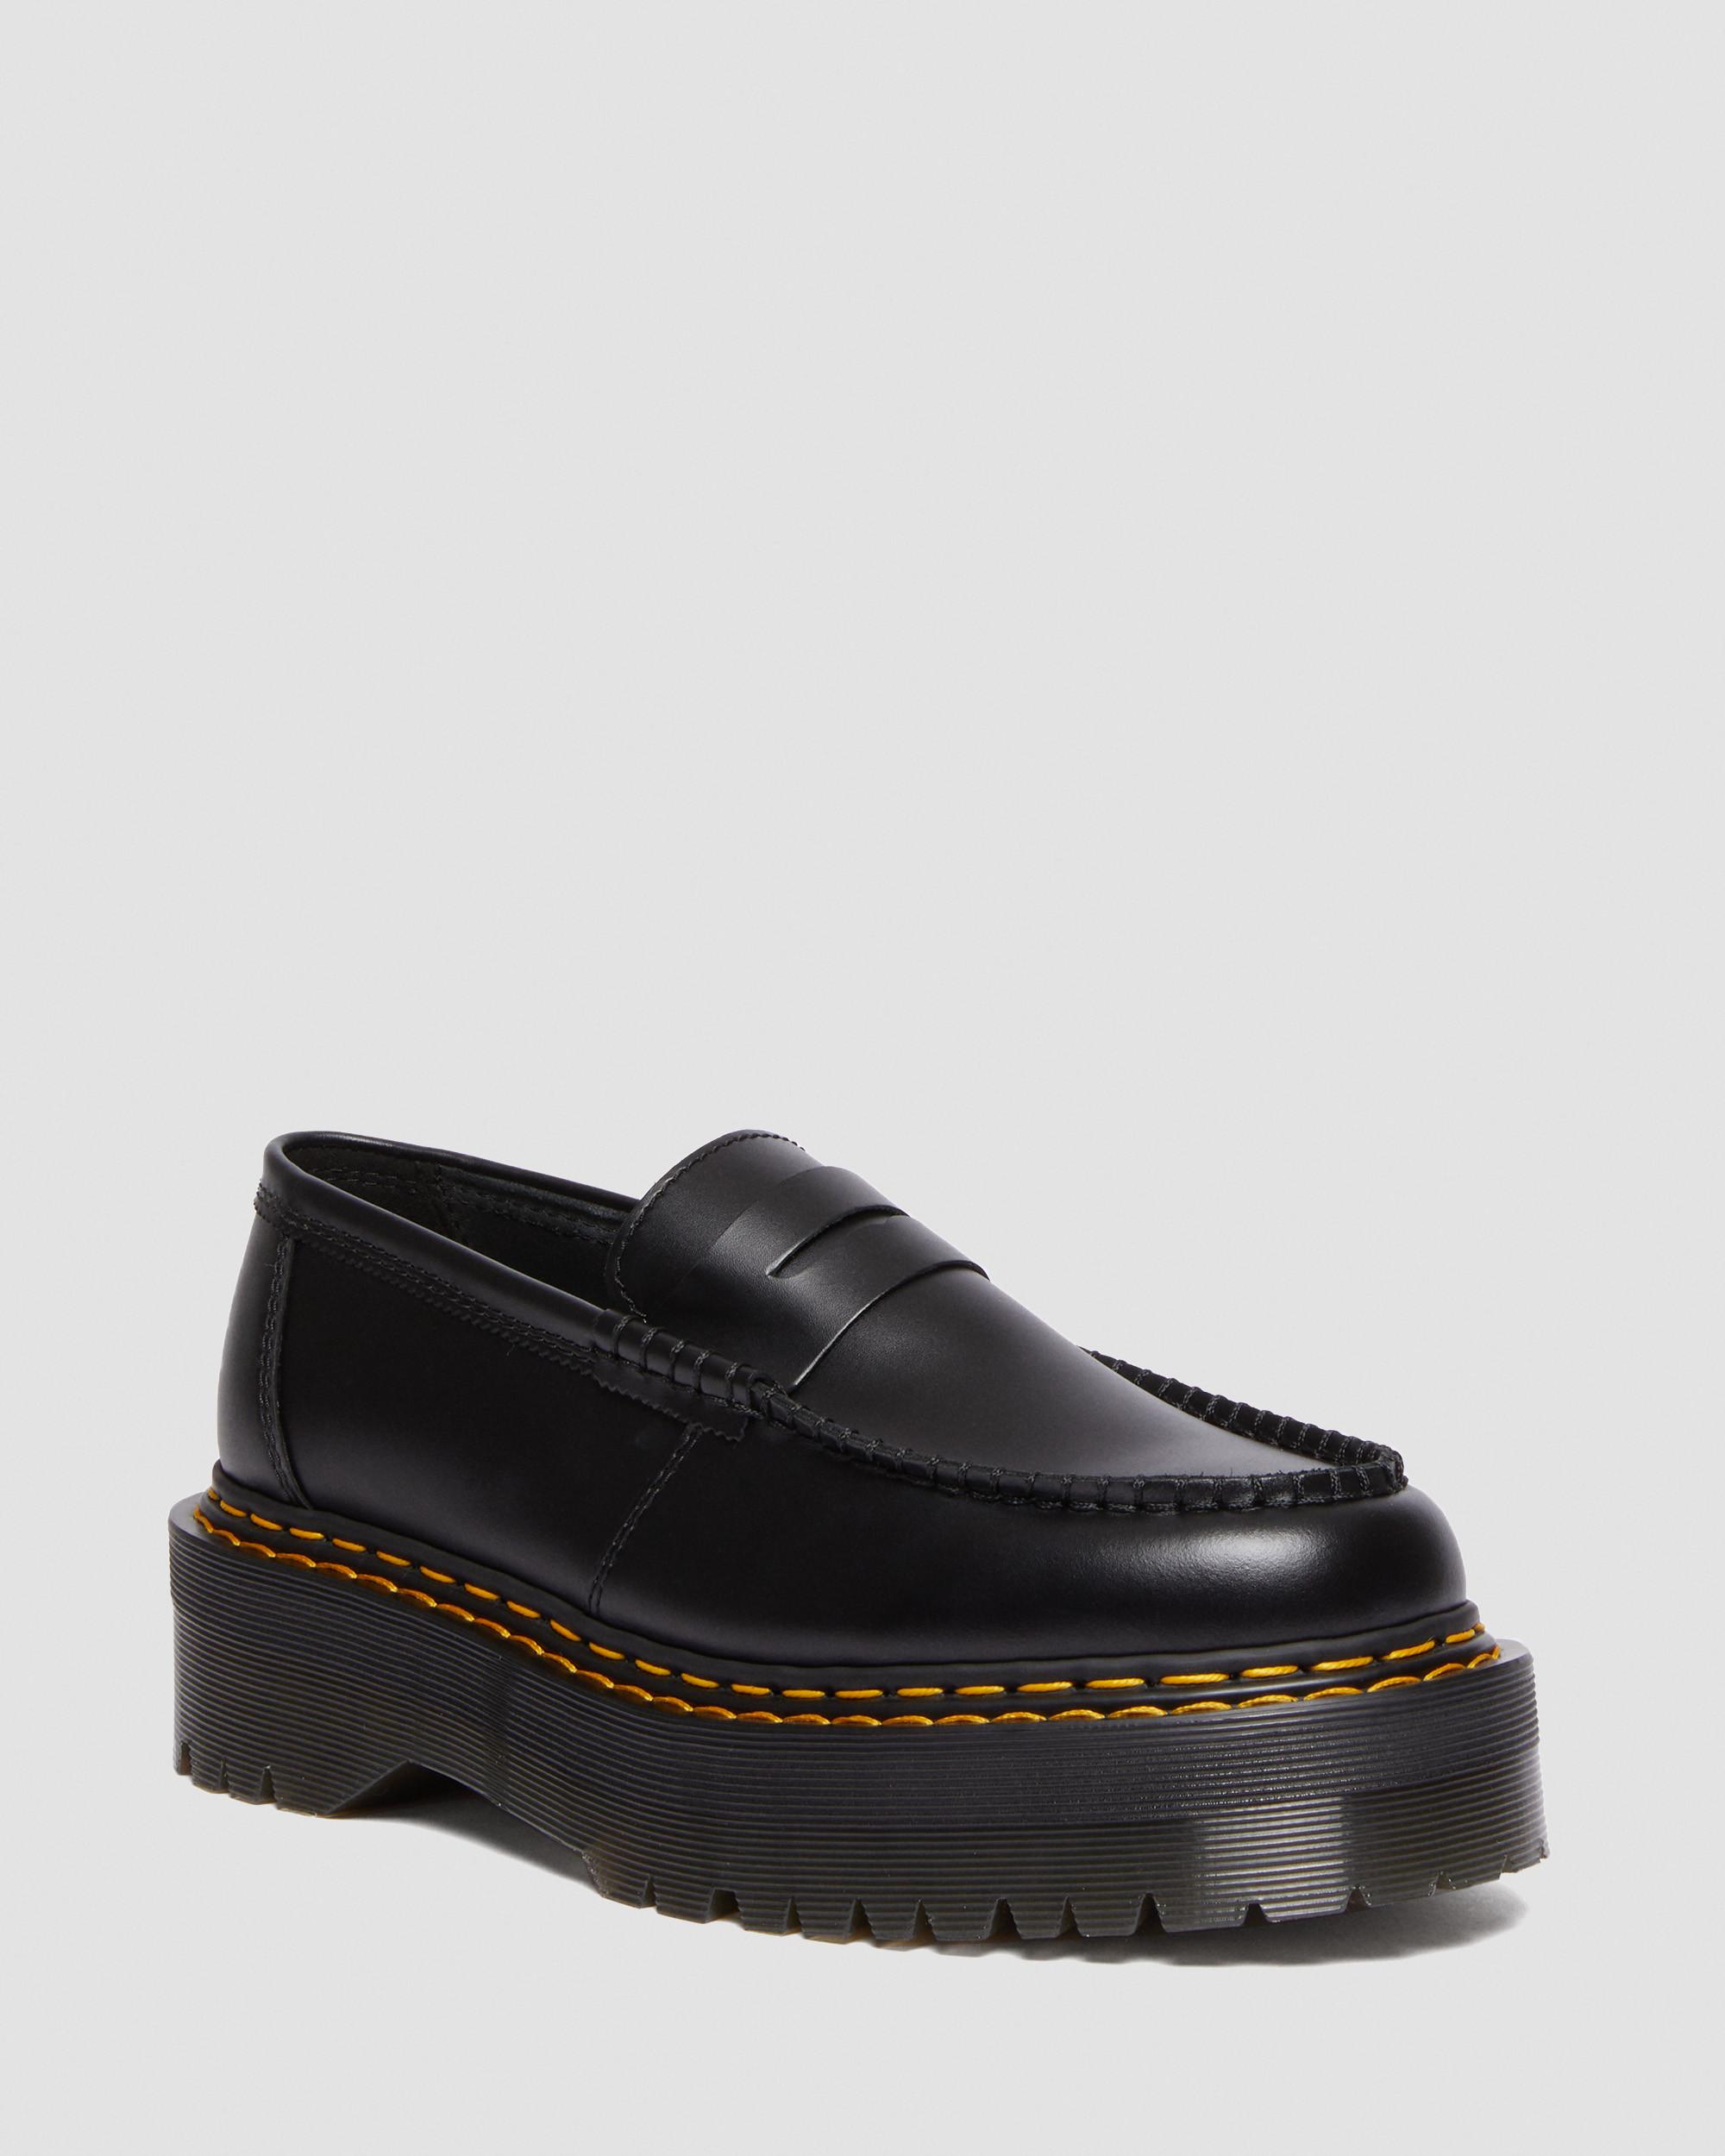 Penton Quad Double Stitch Leather Loafers, Black | Dr. Martens